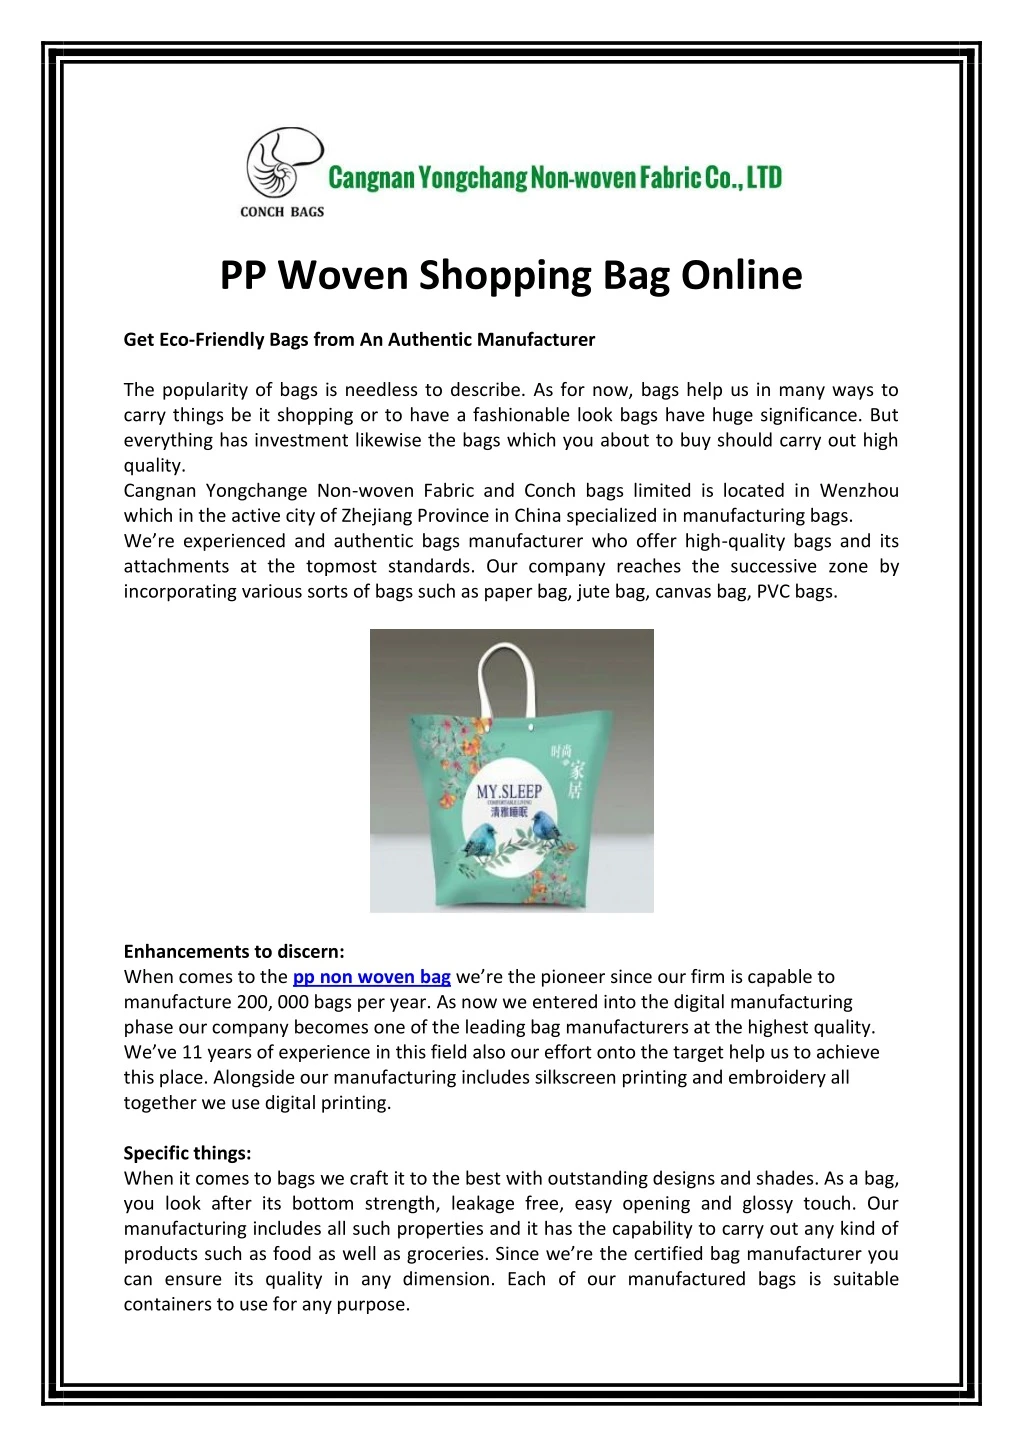 pp woven shopping bag online